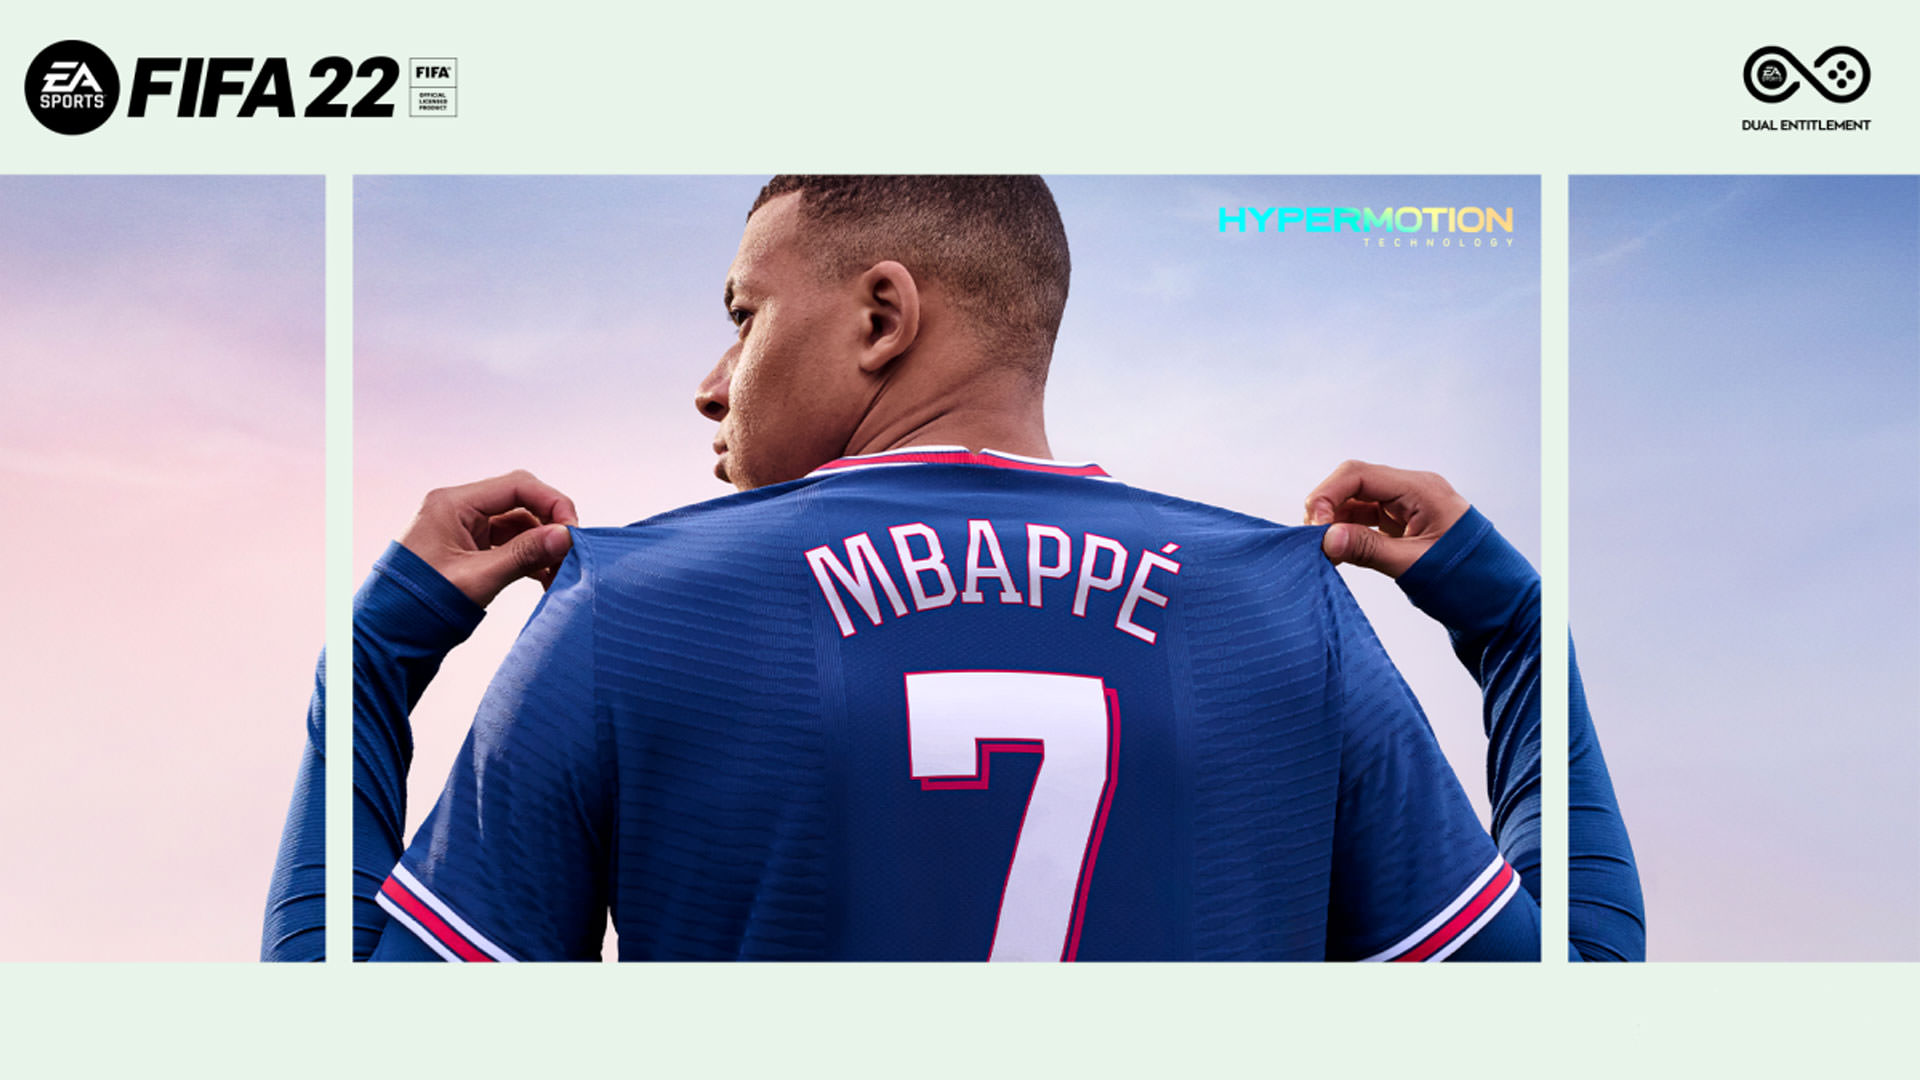 امباپه در حال نشان دادن شماره خود روی جلد FIFA 22